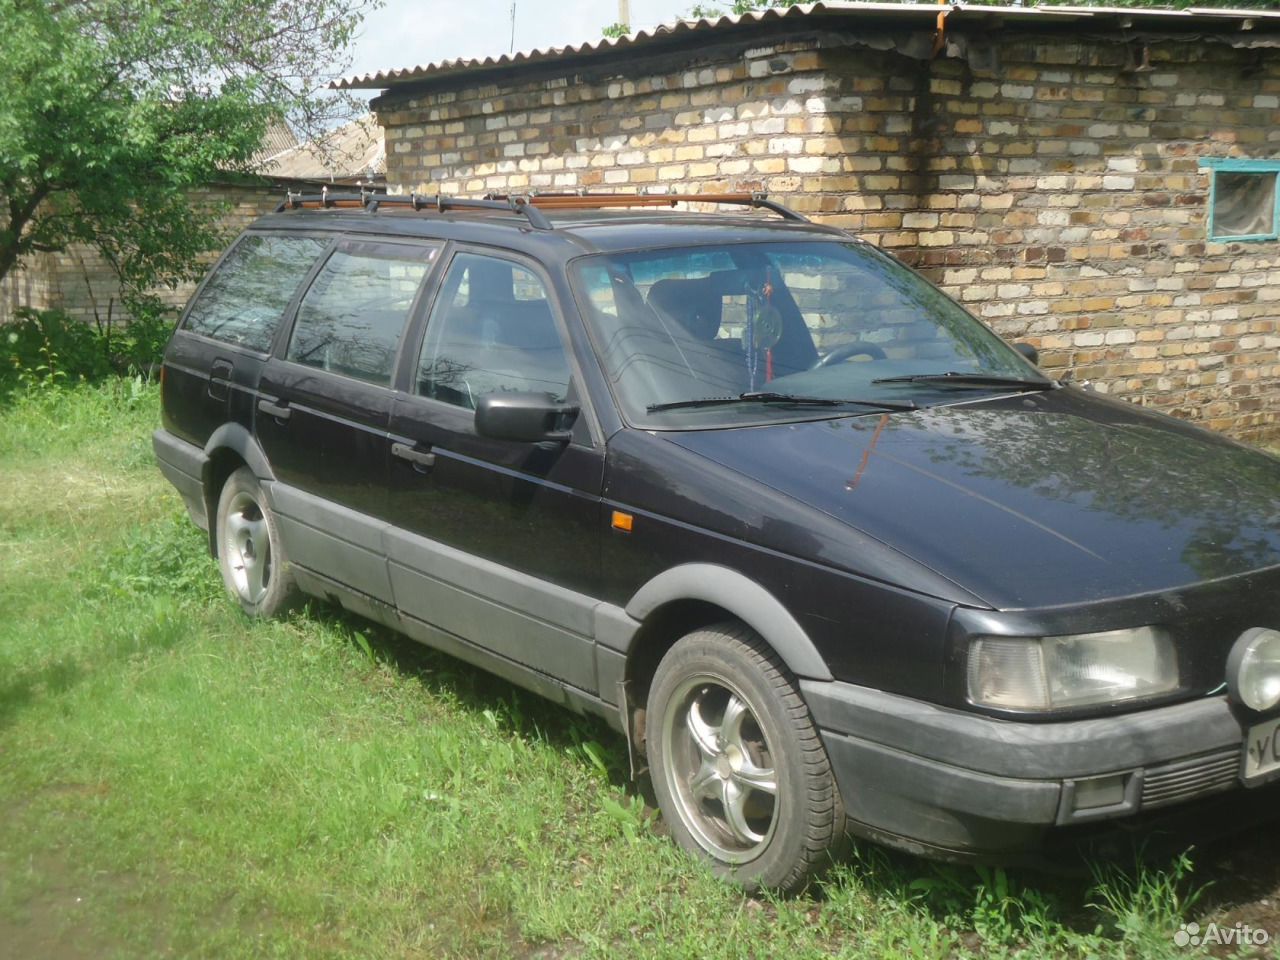 Фольксваген Пассат 1993 года универсал. Volkswagen Passat b3 универсал 1993. Volkswagen b 3 универсал чёрный. Фольксваген Пассат б3 универсал черный. Авито курск универсал